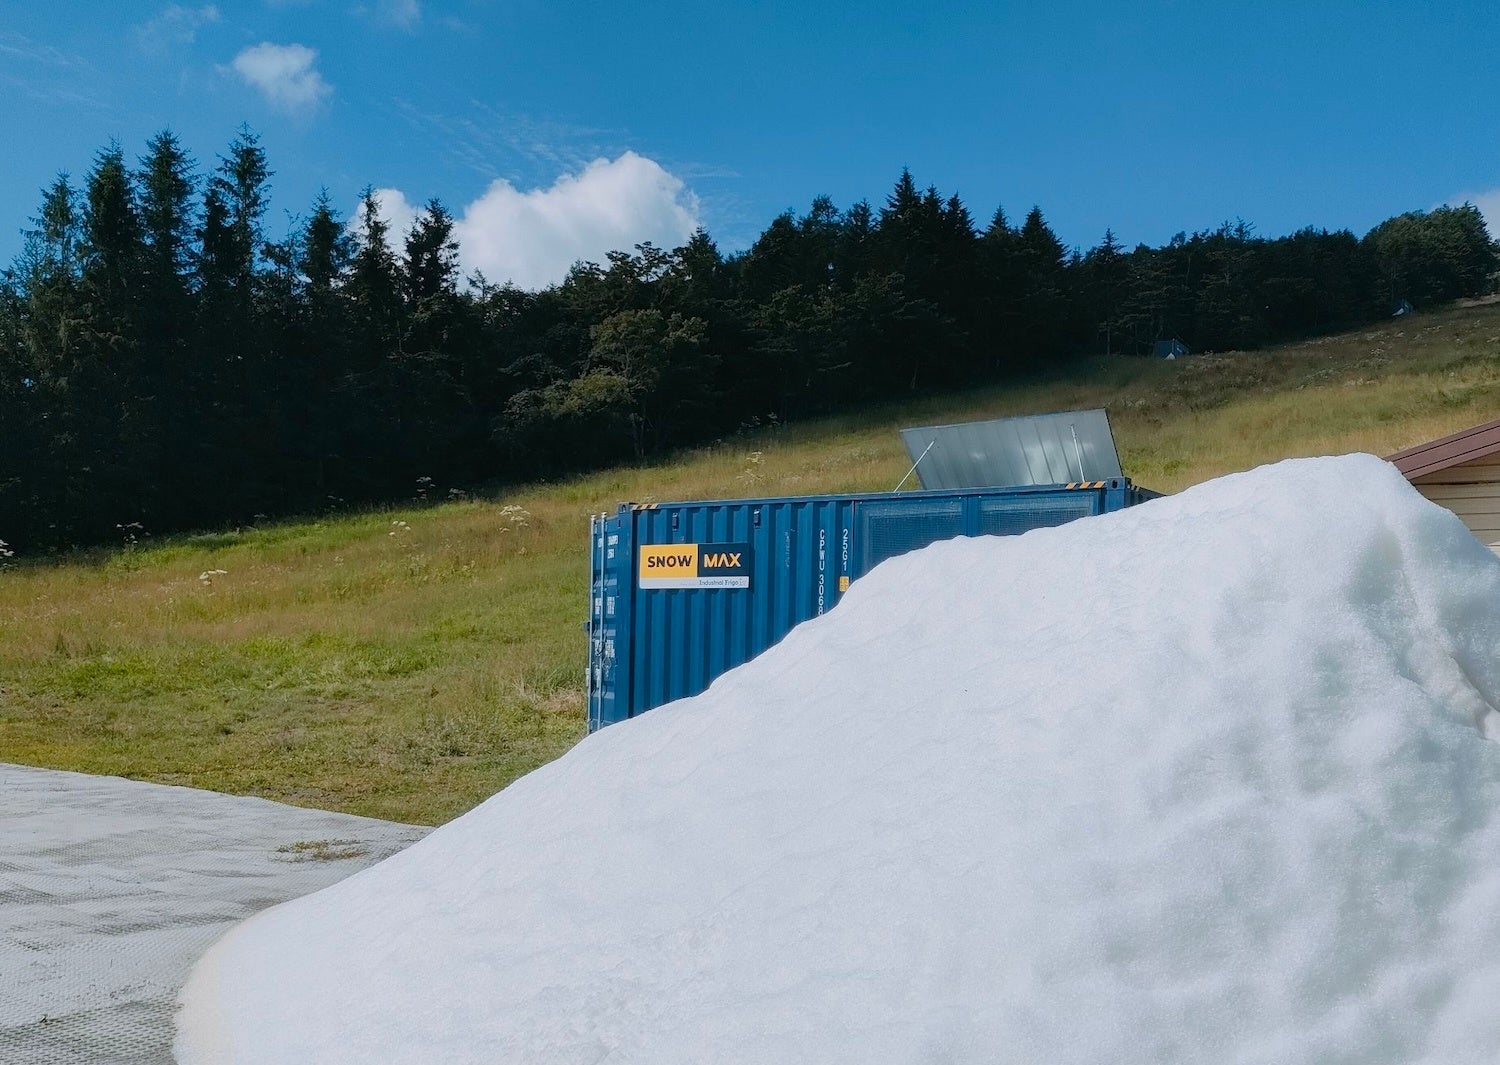 真夏の日本に雪が降る！？最高・最新のイタリア製スノーマシン「SNOWMAX」がデモンストレーションにむけ調整運転実施中。連日の猛暑の中、絶賛造雪・順調稼働で菅平裏太郎ゲレンデに雪山発生中！！